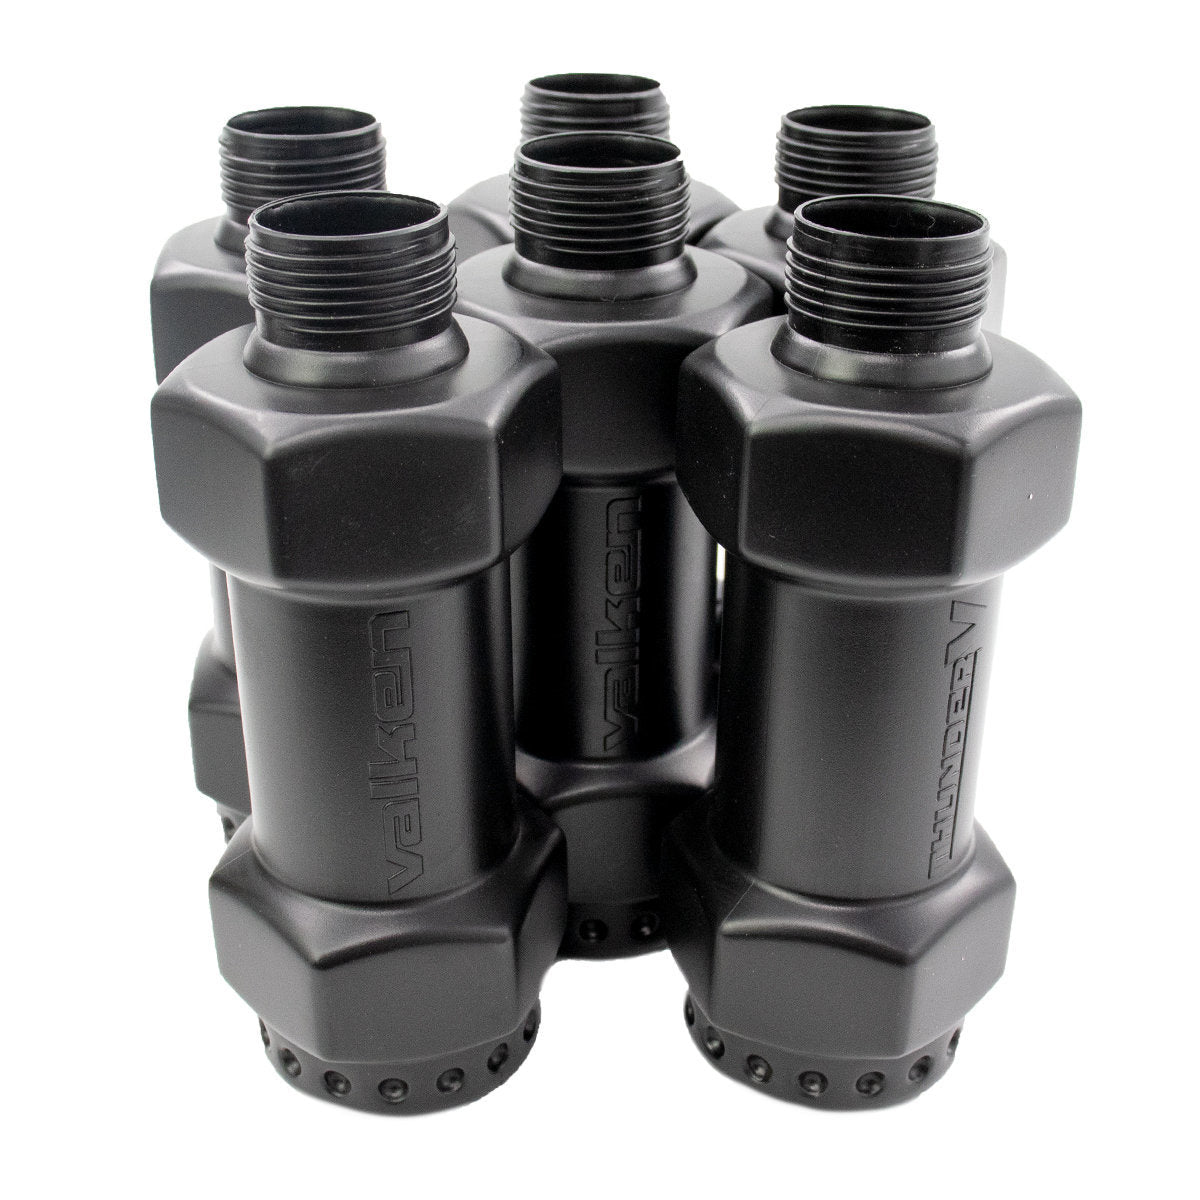 Valken Thunder V2 CO2 Sound Simulation Grenade Dumbbell Shells - 6 Pack (Shells Only)